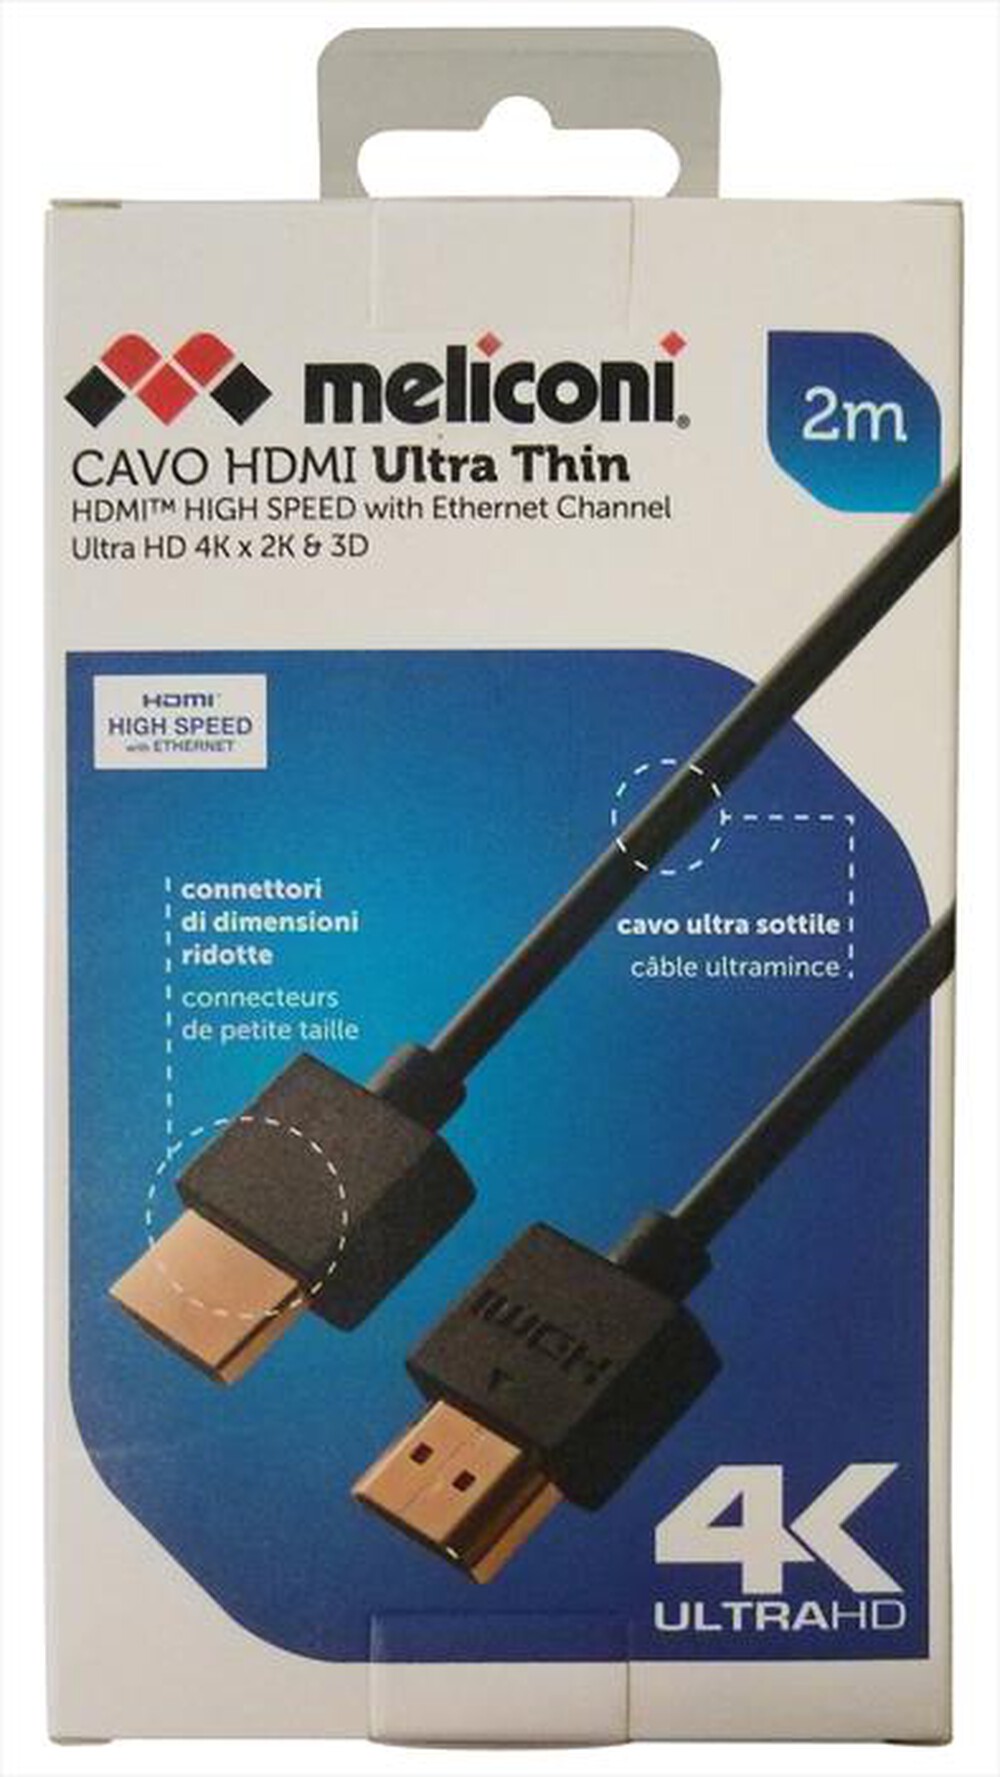 "MELICONI - HDMI ULTRA THIN 2 M-Nero"